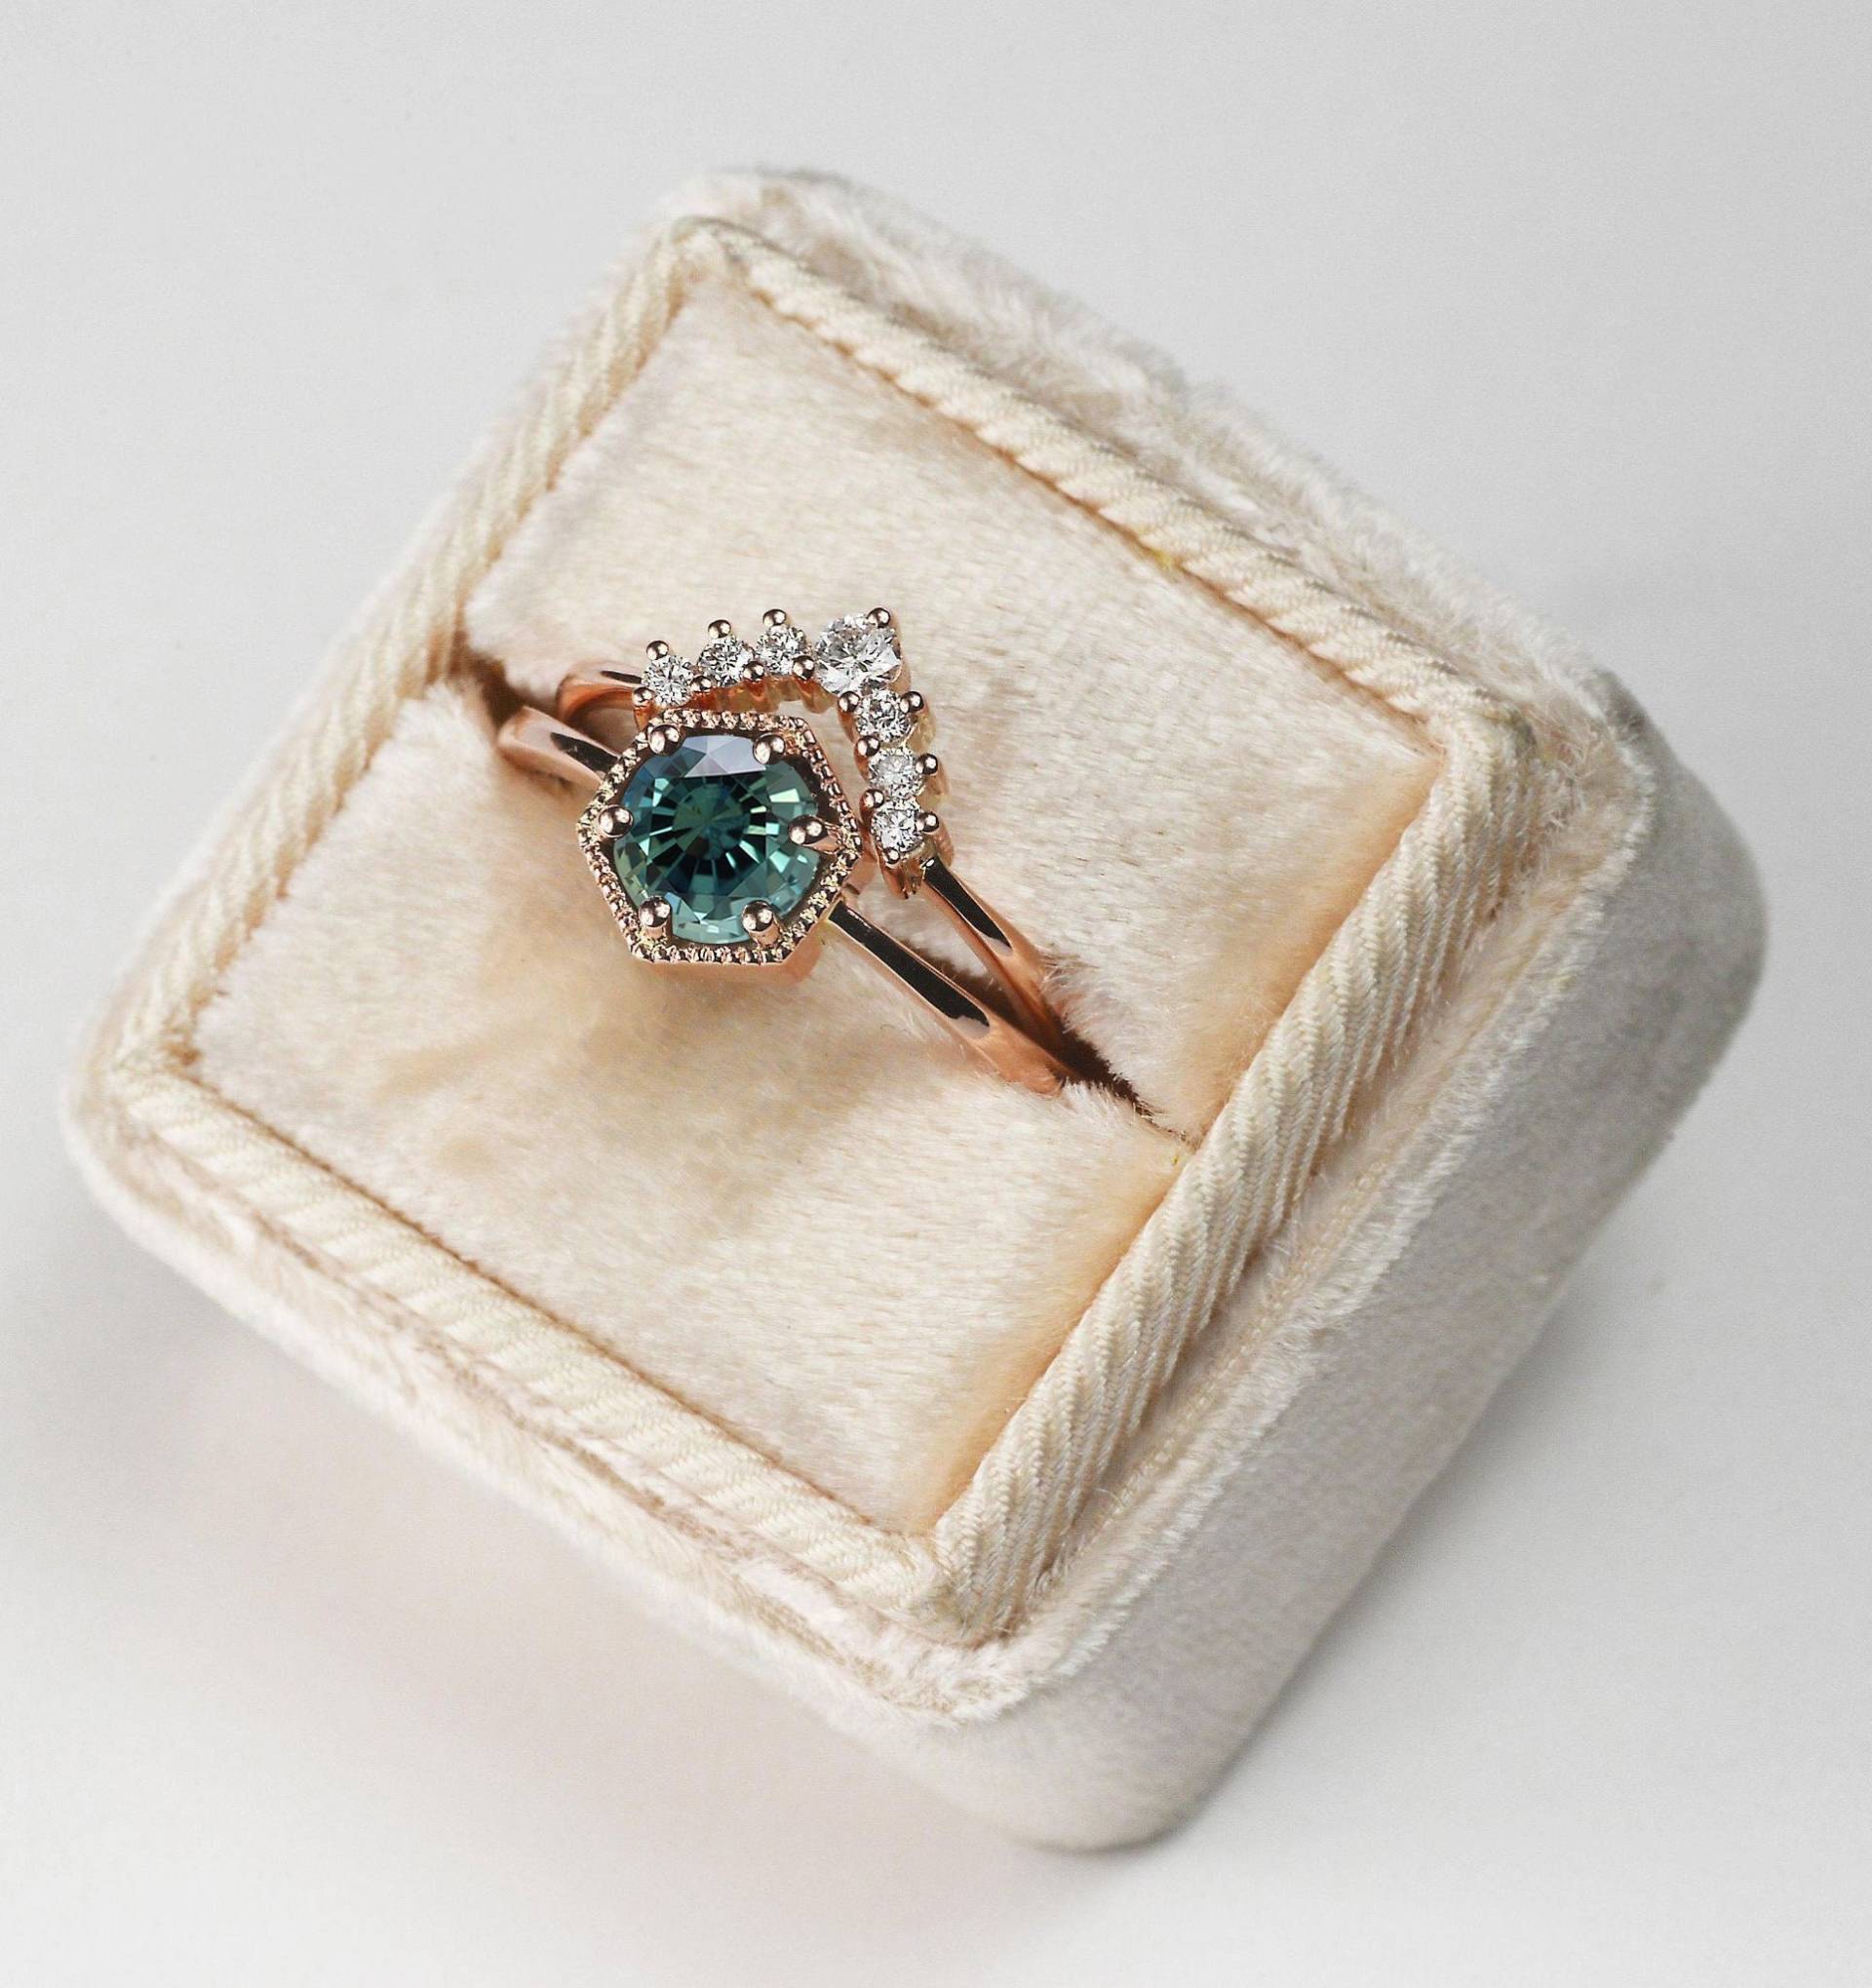 Türkis Saphir Verlobungsring Und Diamant Ehering | Brautring Rose, Gelb, Weißgold Ring Set von DiorahJewellery